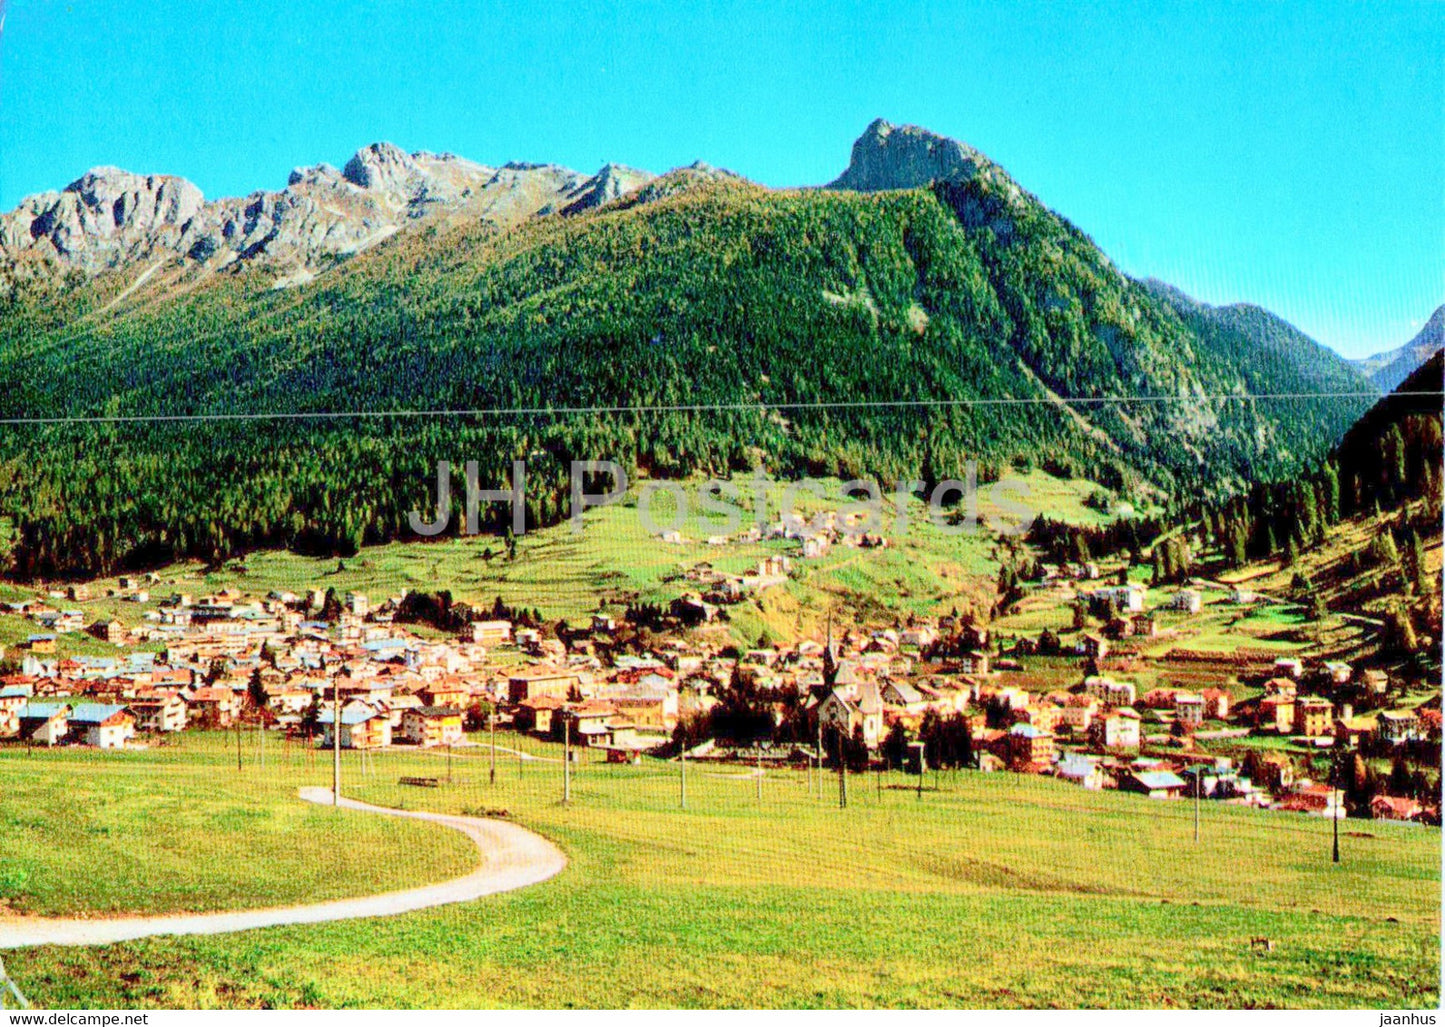 Moena 1184 m - Dolomiti - 3837 - Italy - unused - JH Postcards